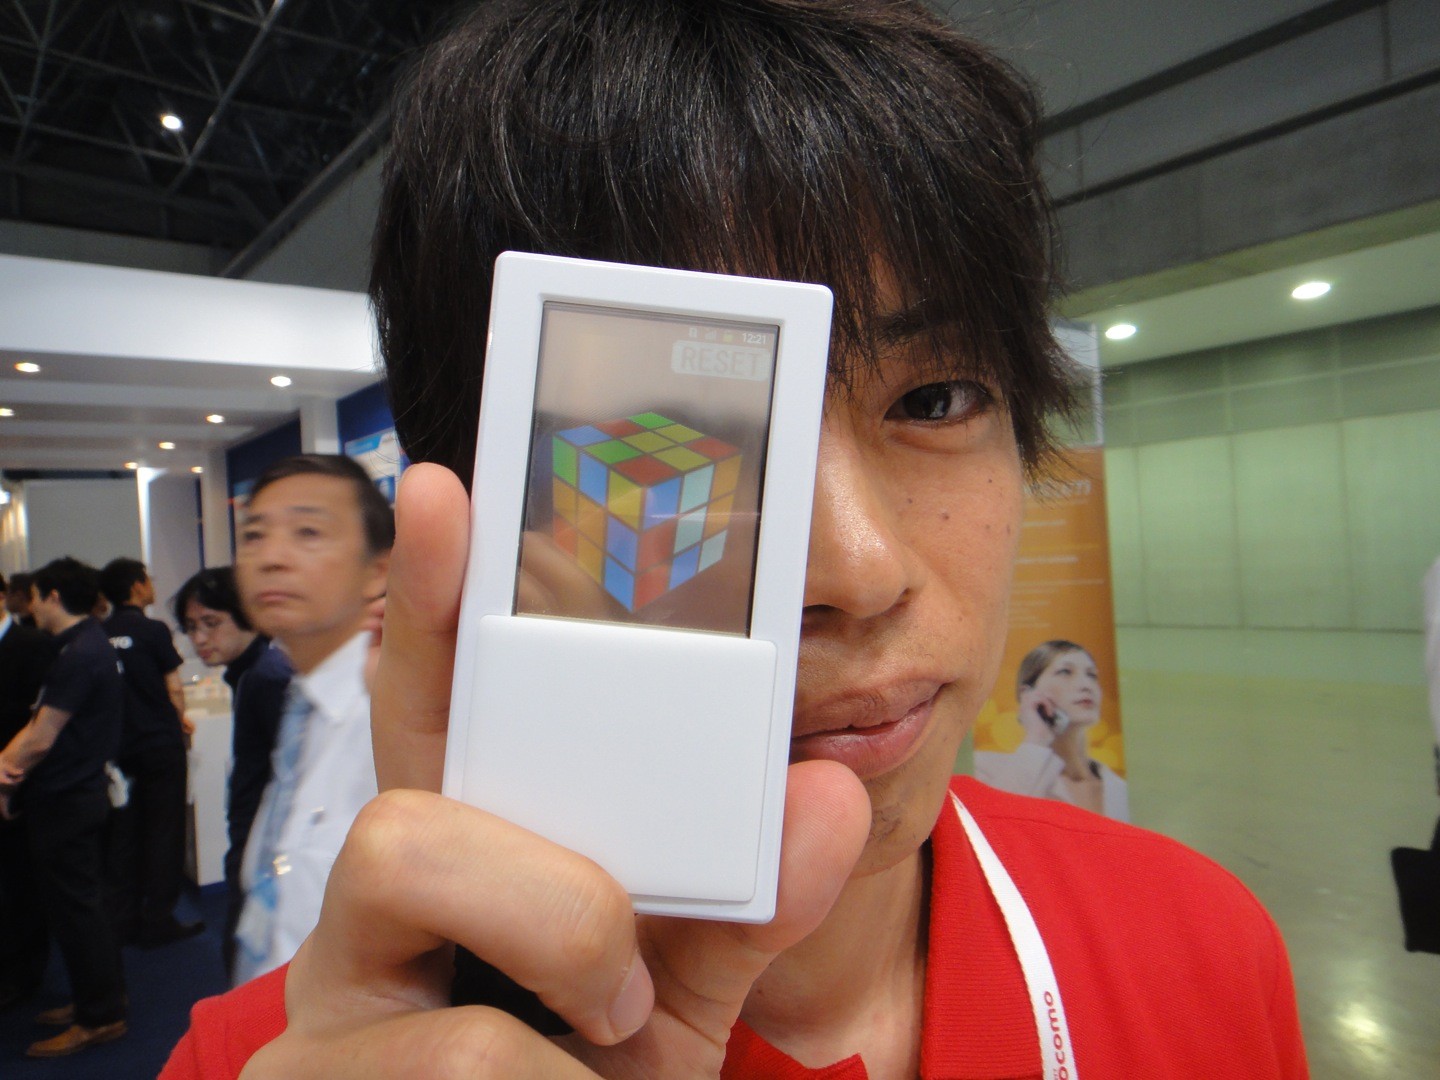 Dal Giappone ecco uno smartphone Android con doppio display trasparente [VIDEO]